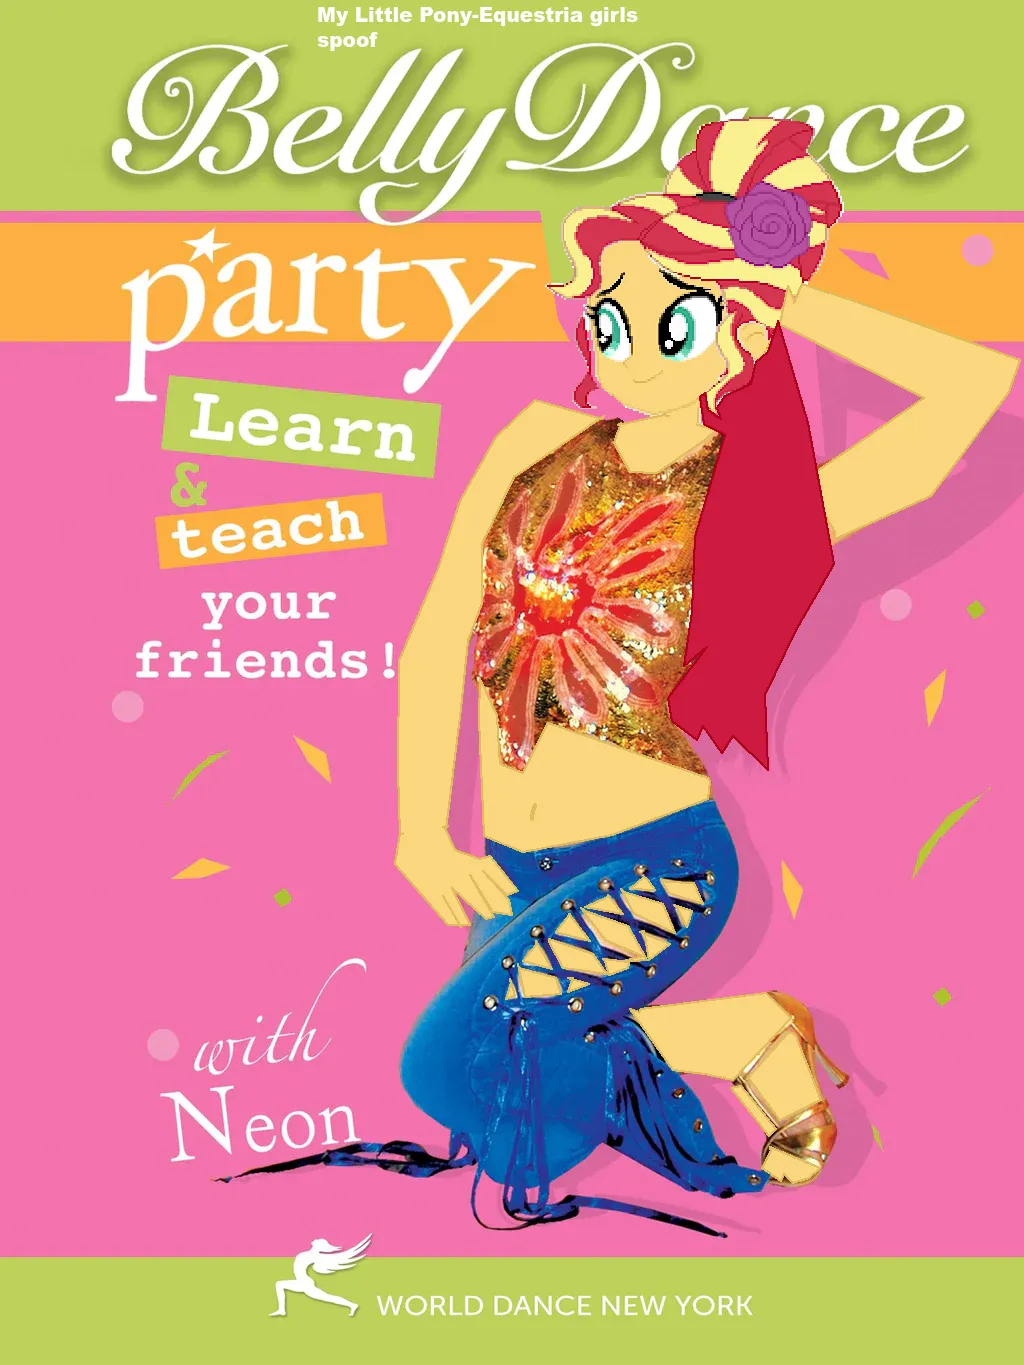 E-girls belly dance party idea | New ideas by Matt Weaver Wiki | Fandom